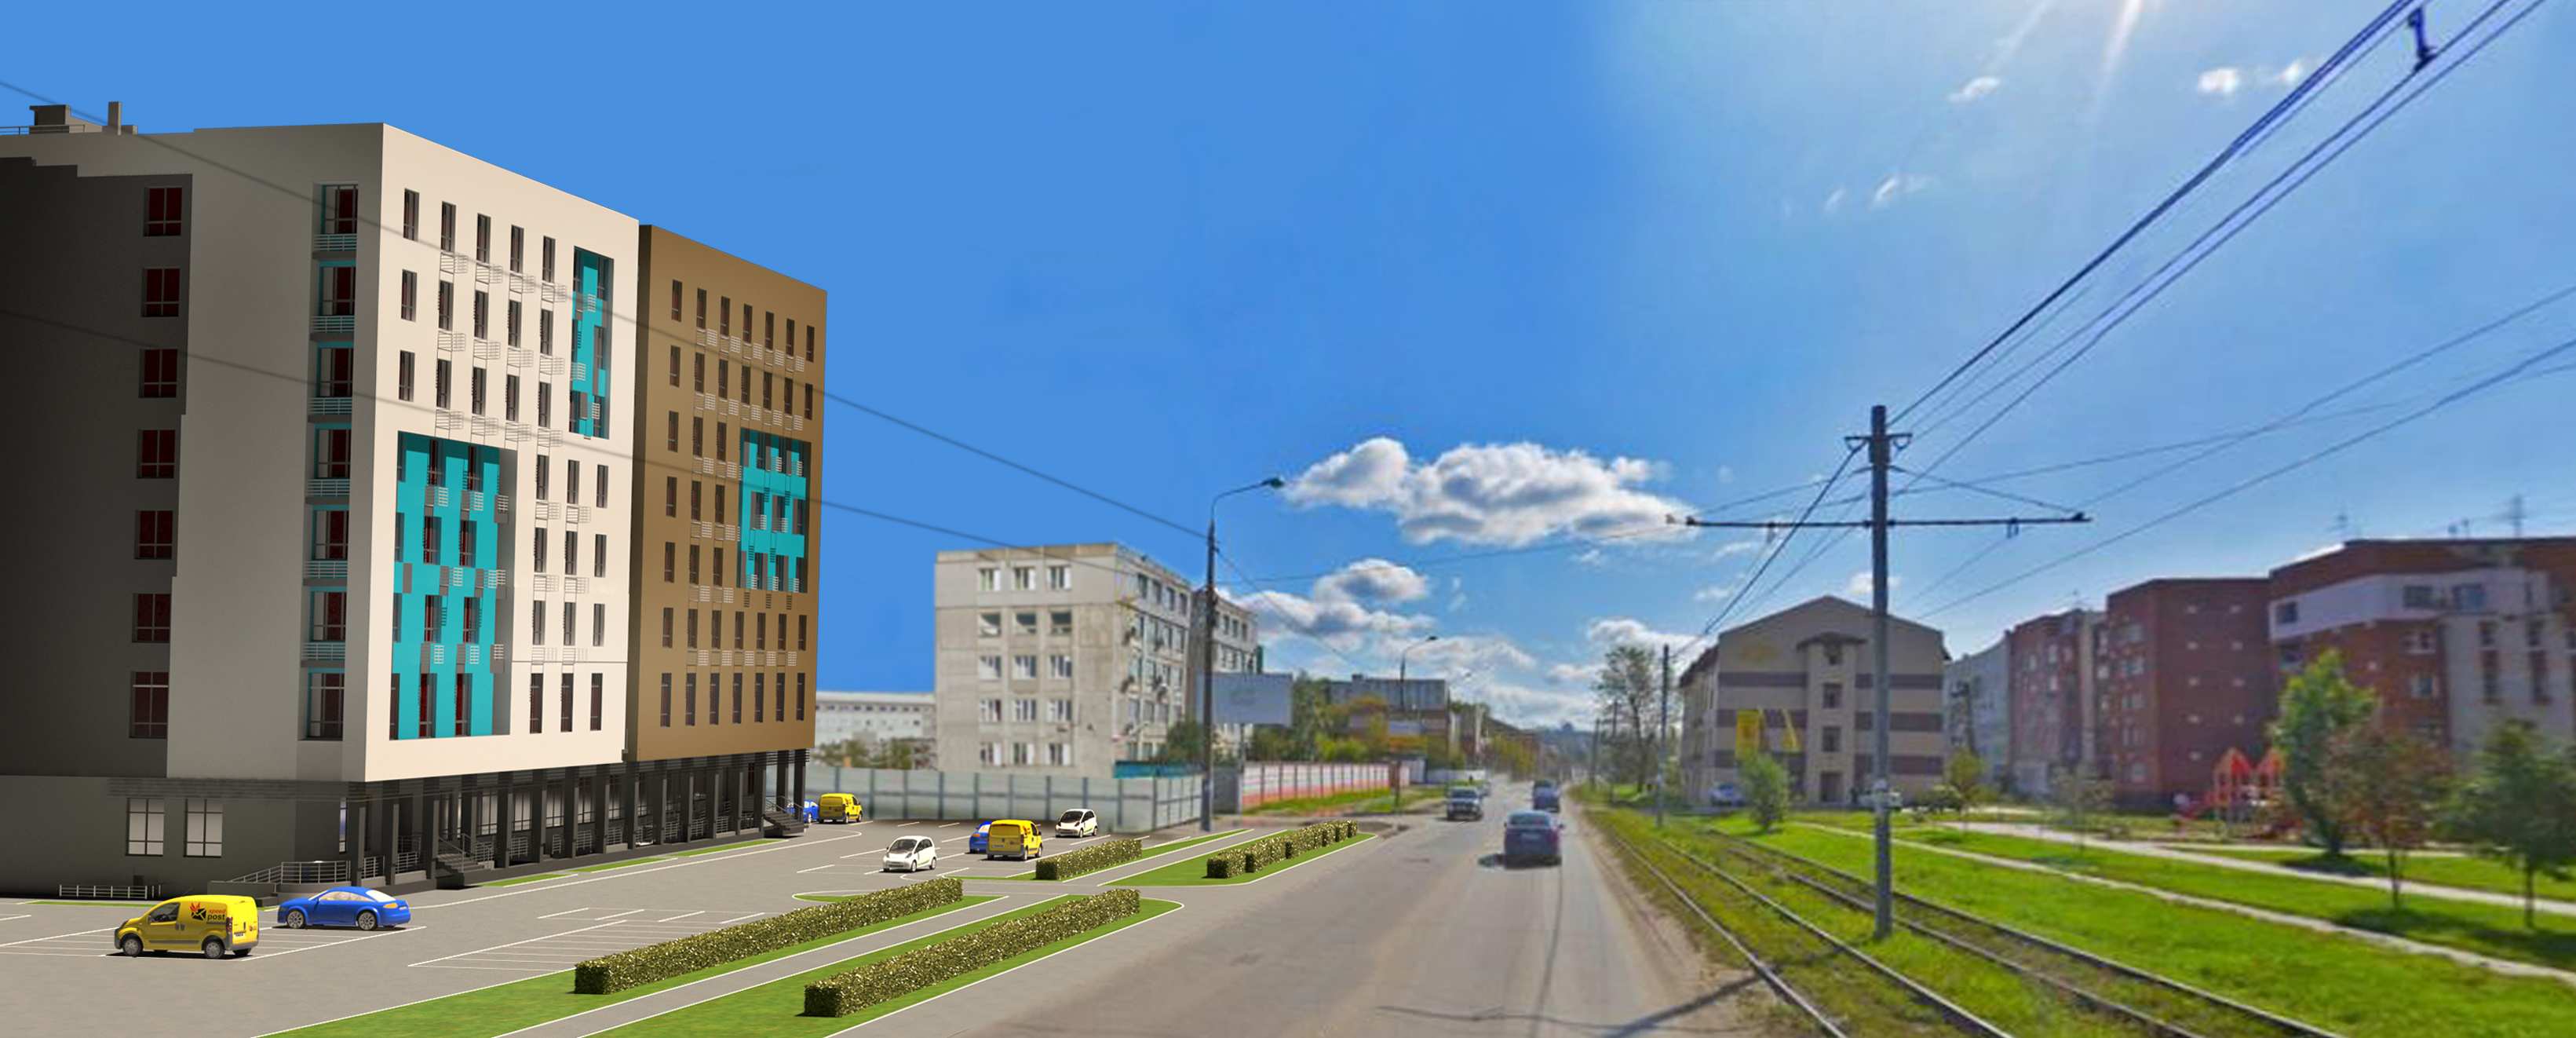 Доступное жилье: обзор нижегородских новостроек с квартирами до 4,5 млн рублей - фото 5